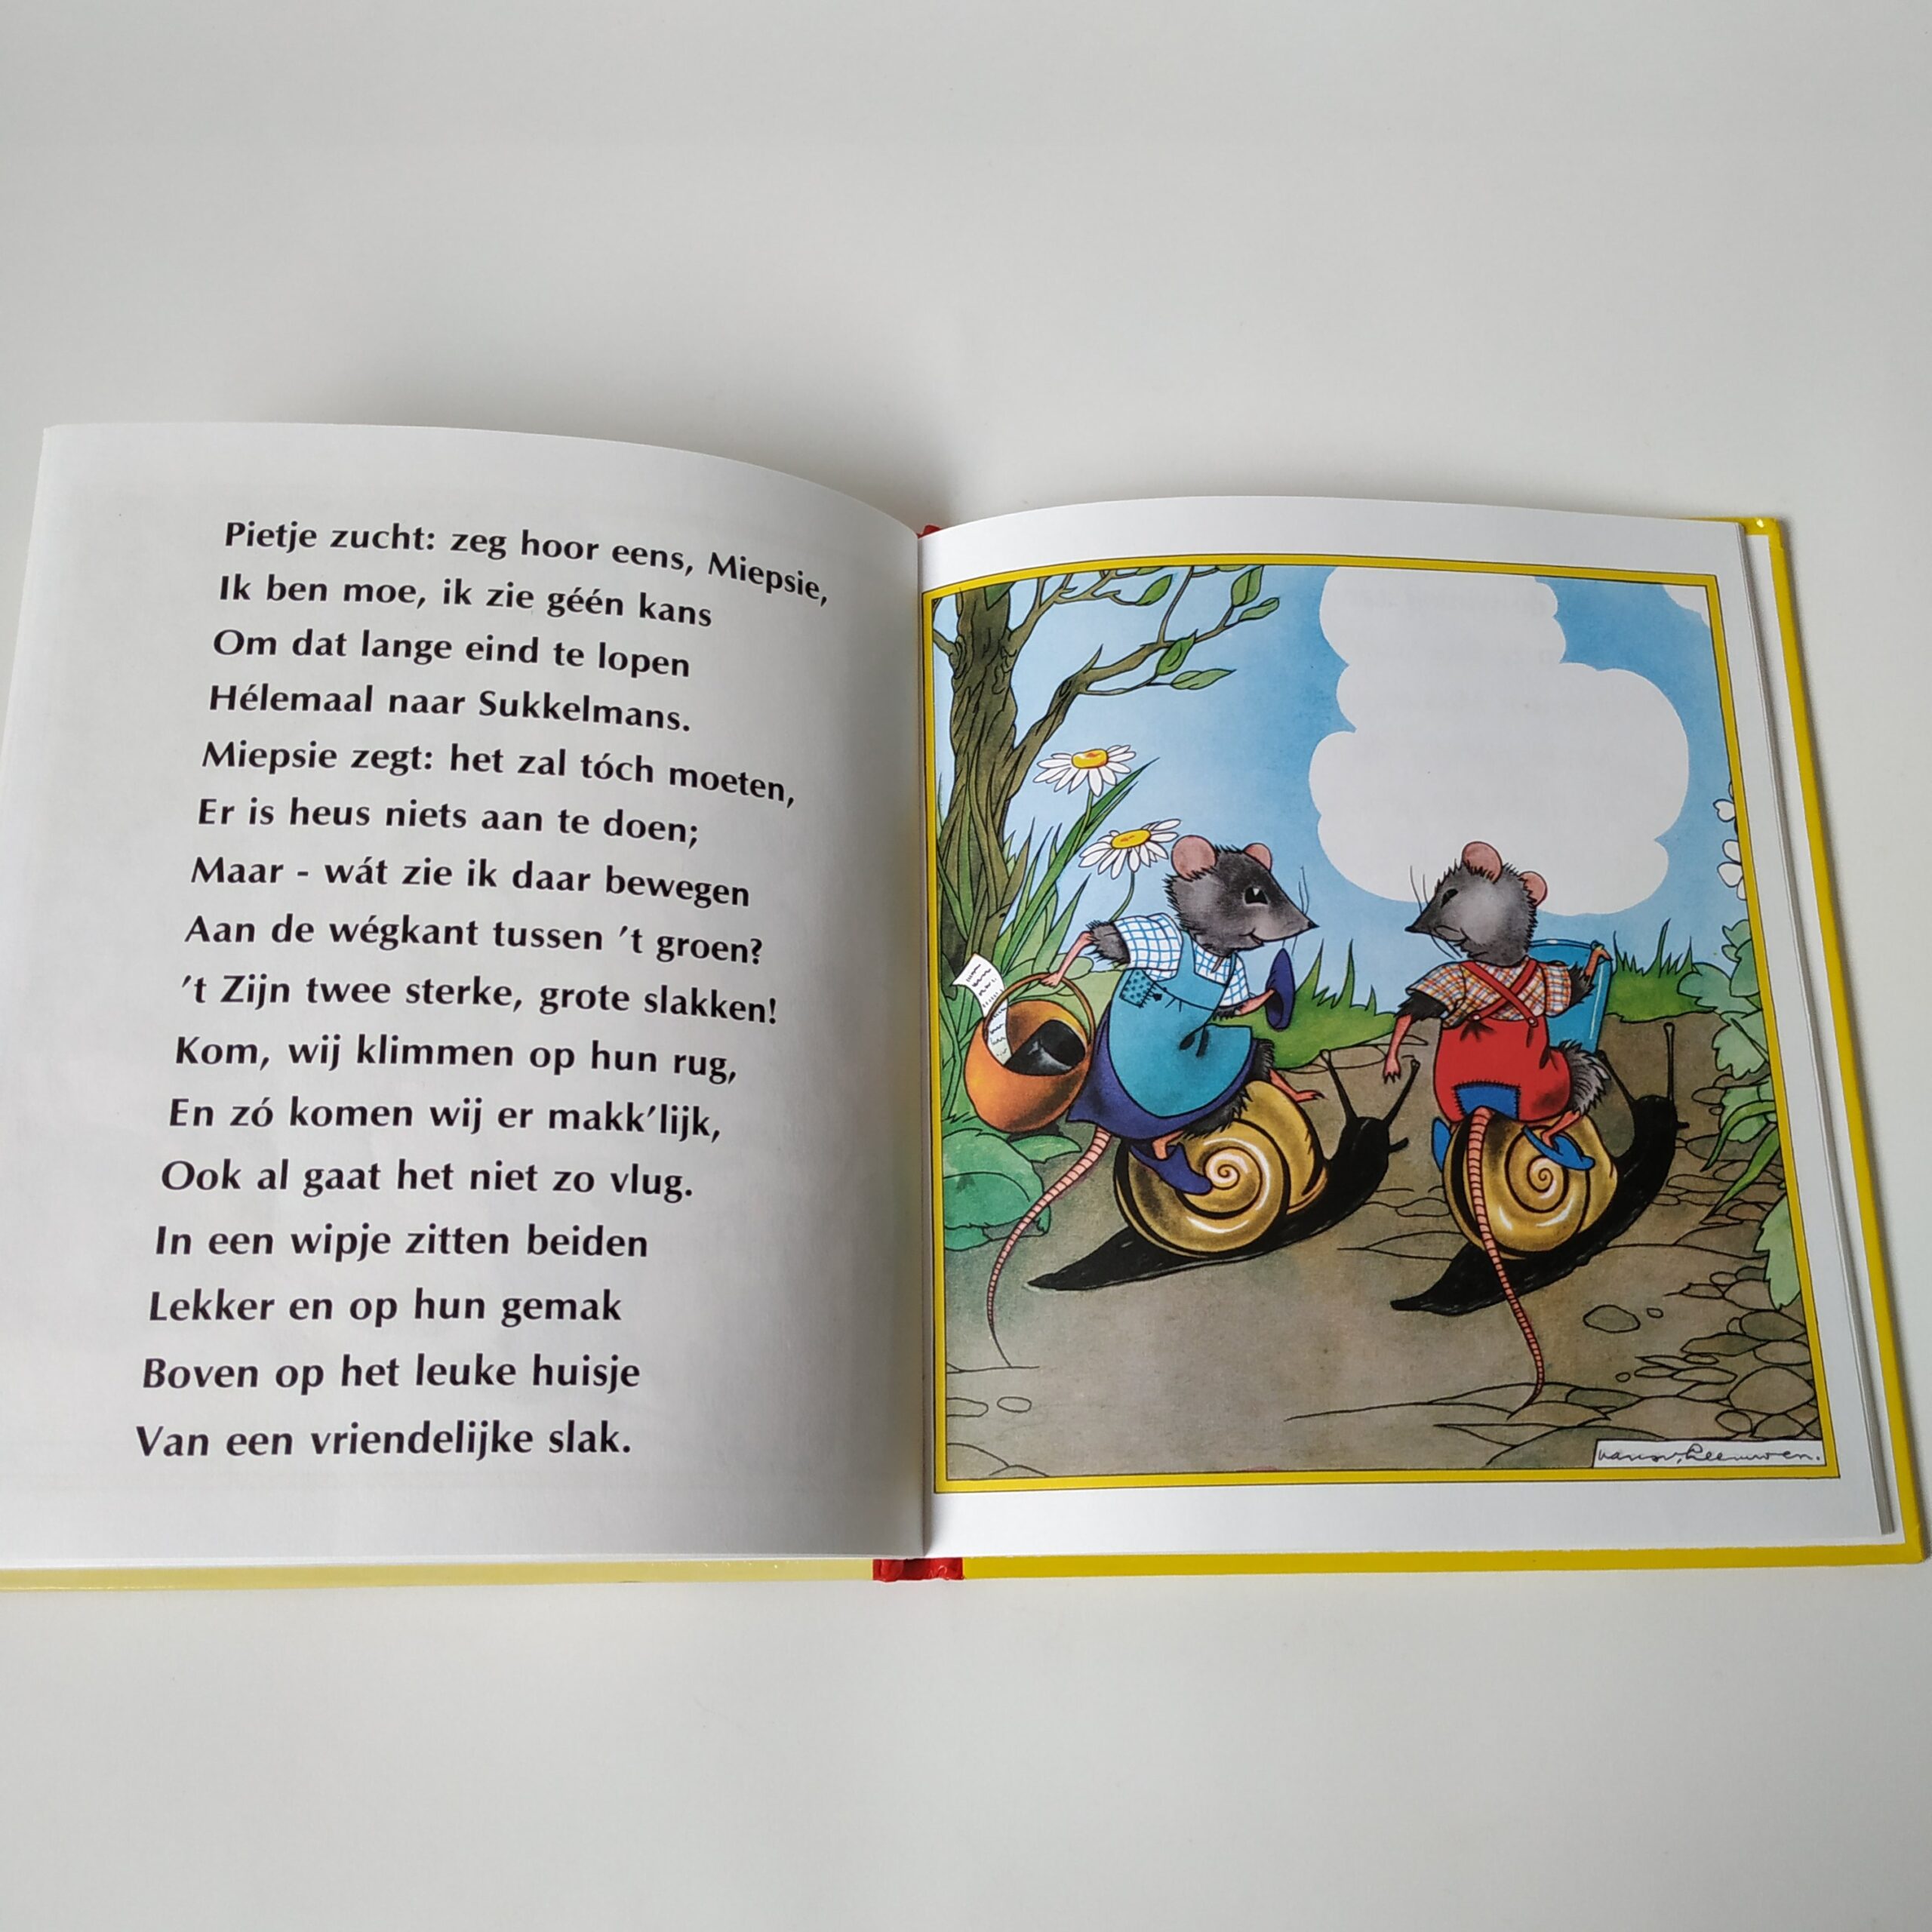 Het Muizenboek op rijm verteld door Clinge Doorenbos (5)